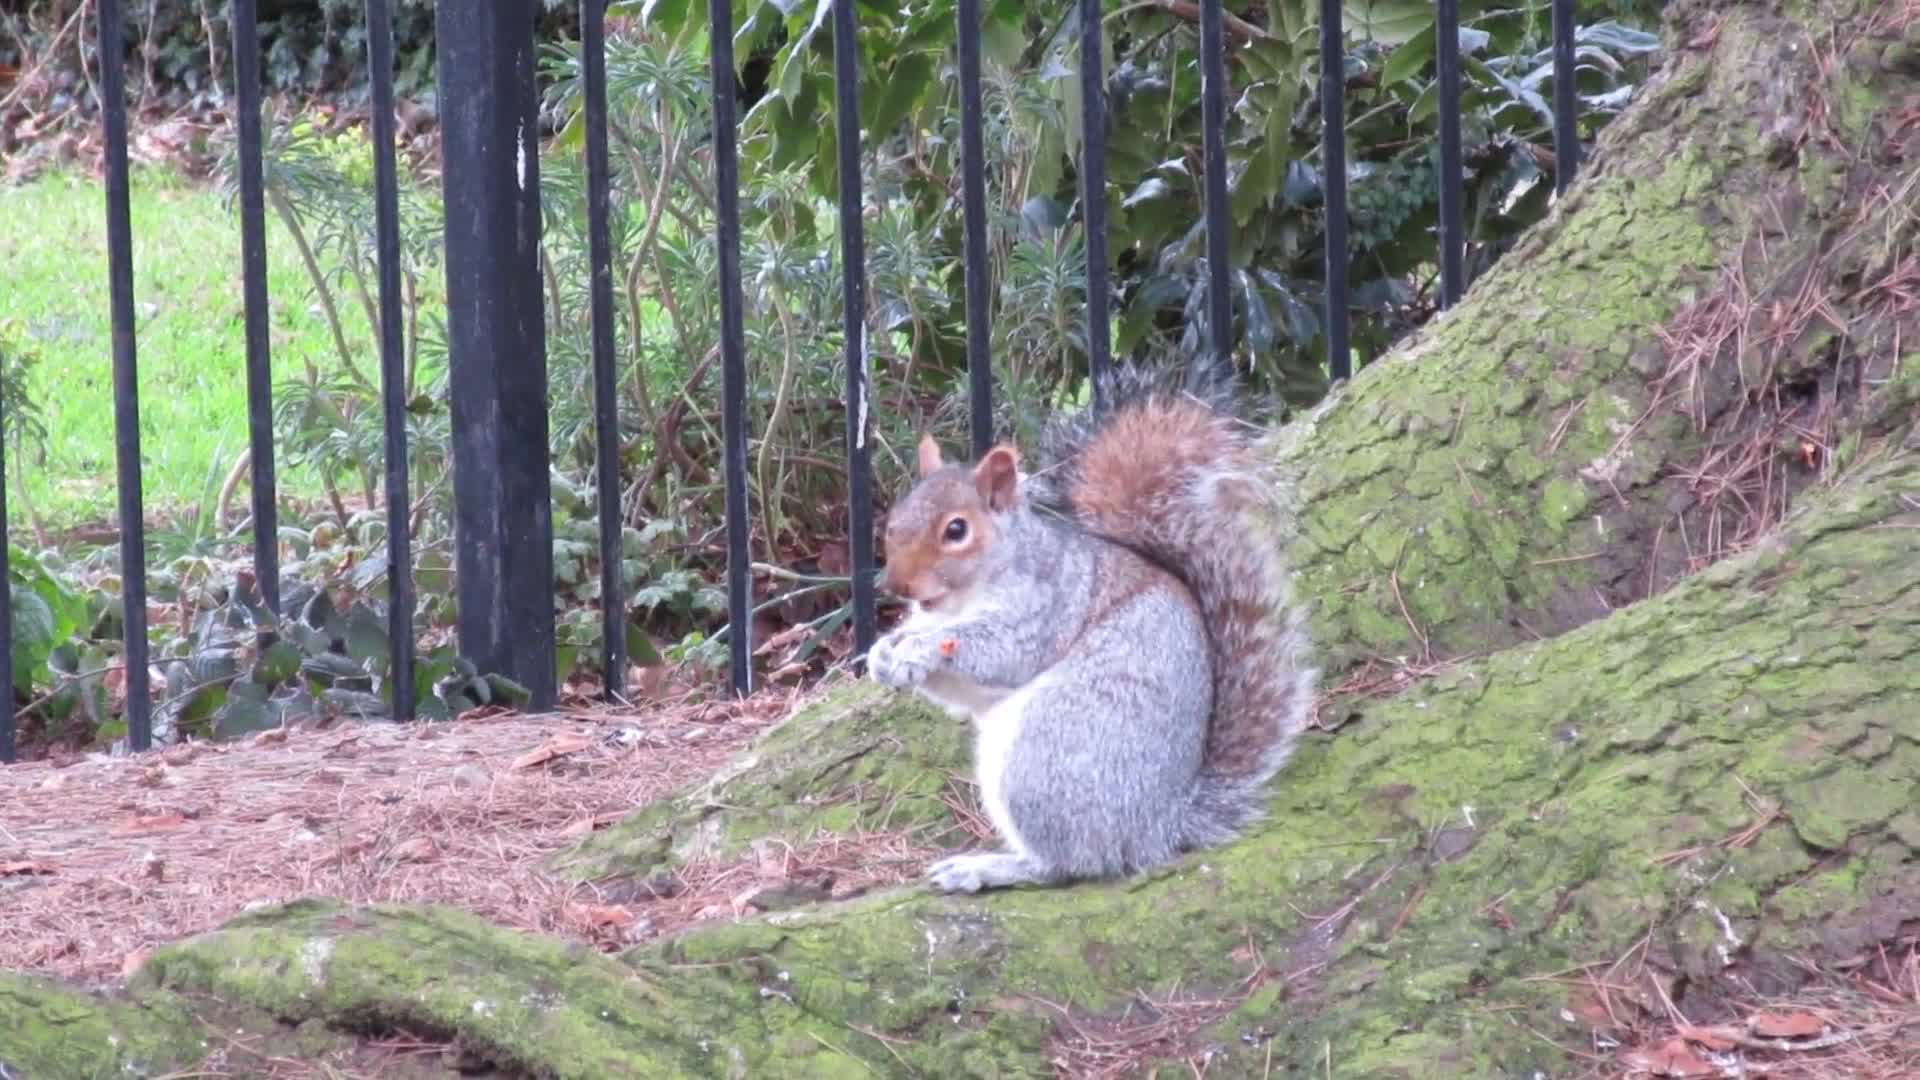 Watching a Feeding Squirrel